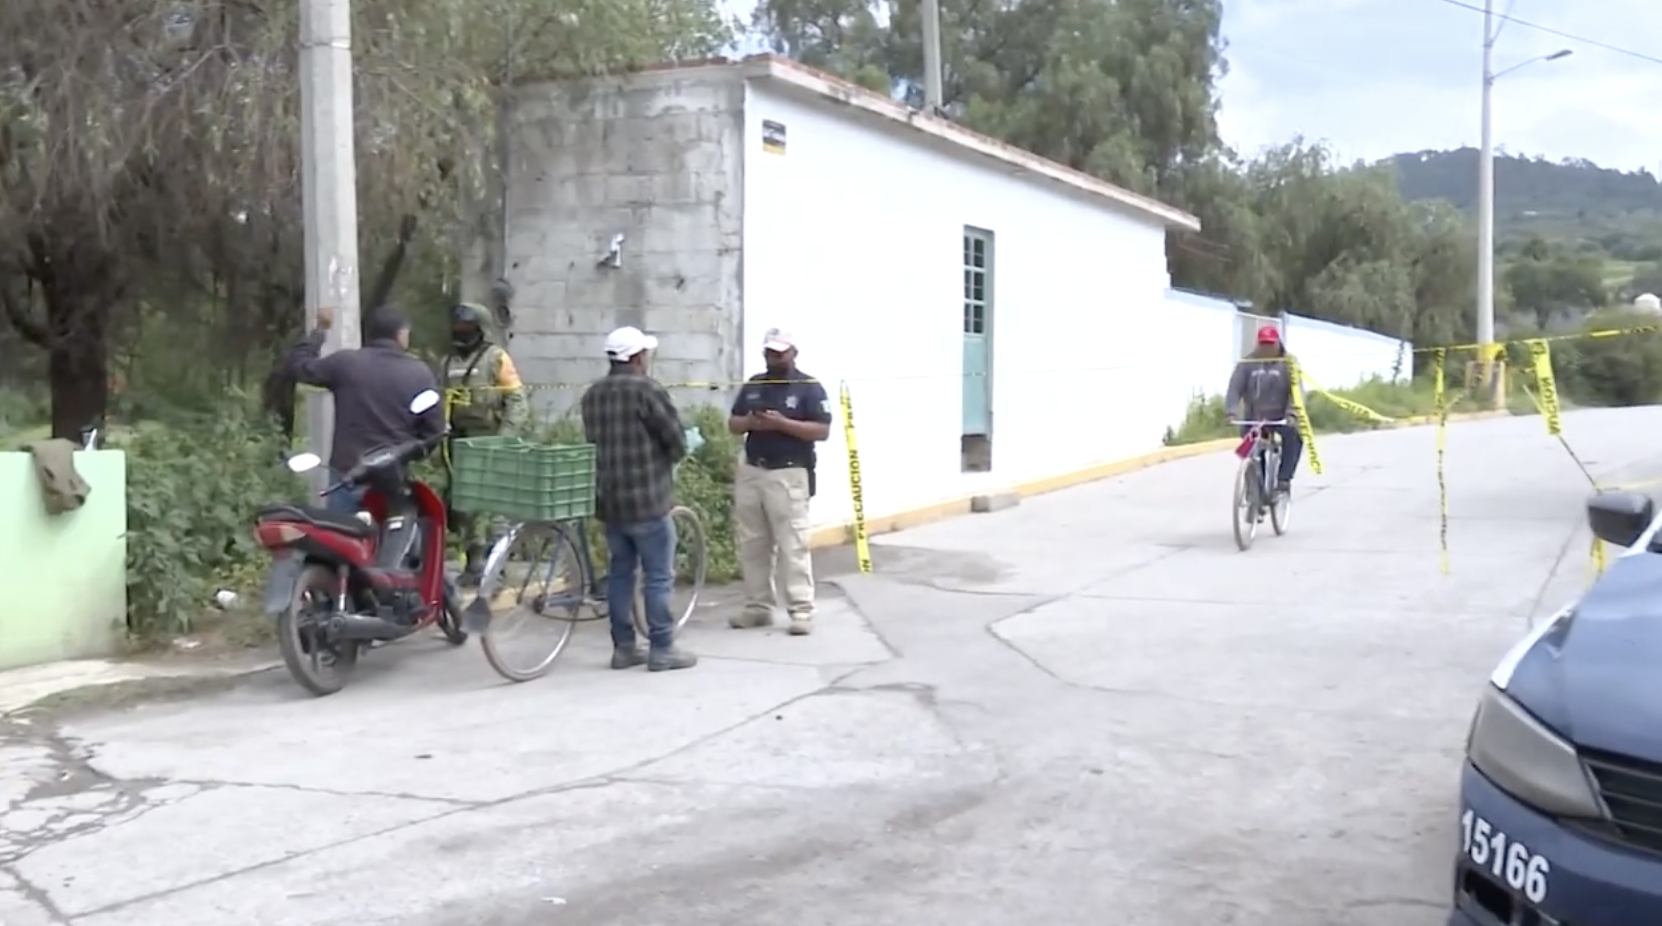 Regresan a la normalidad en San Cristóbal Tepatlaxco, San Martín  Texmelucan, tras fuga de gas; permiten regreso a casas y reactivan energía  eléctrica - SET Noticias